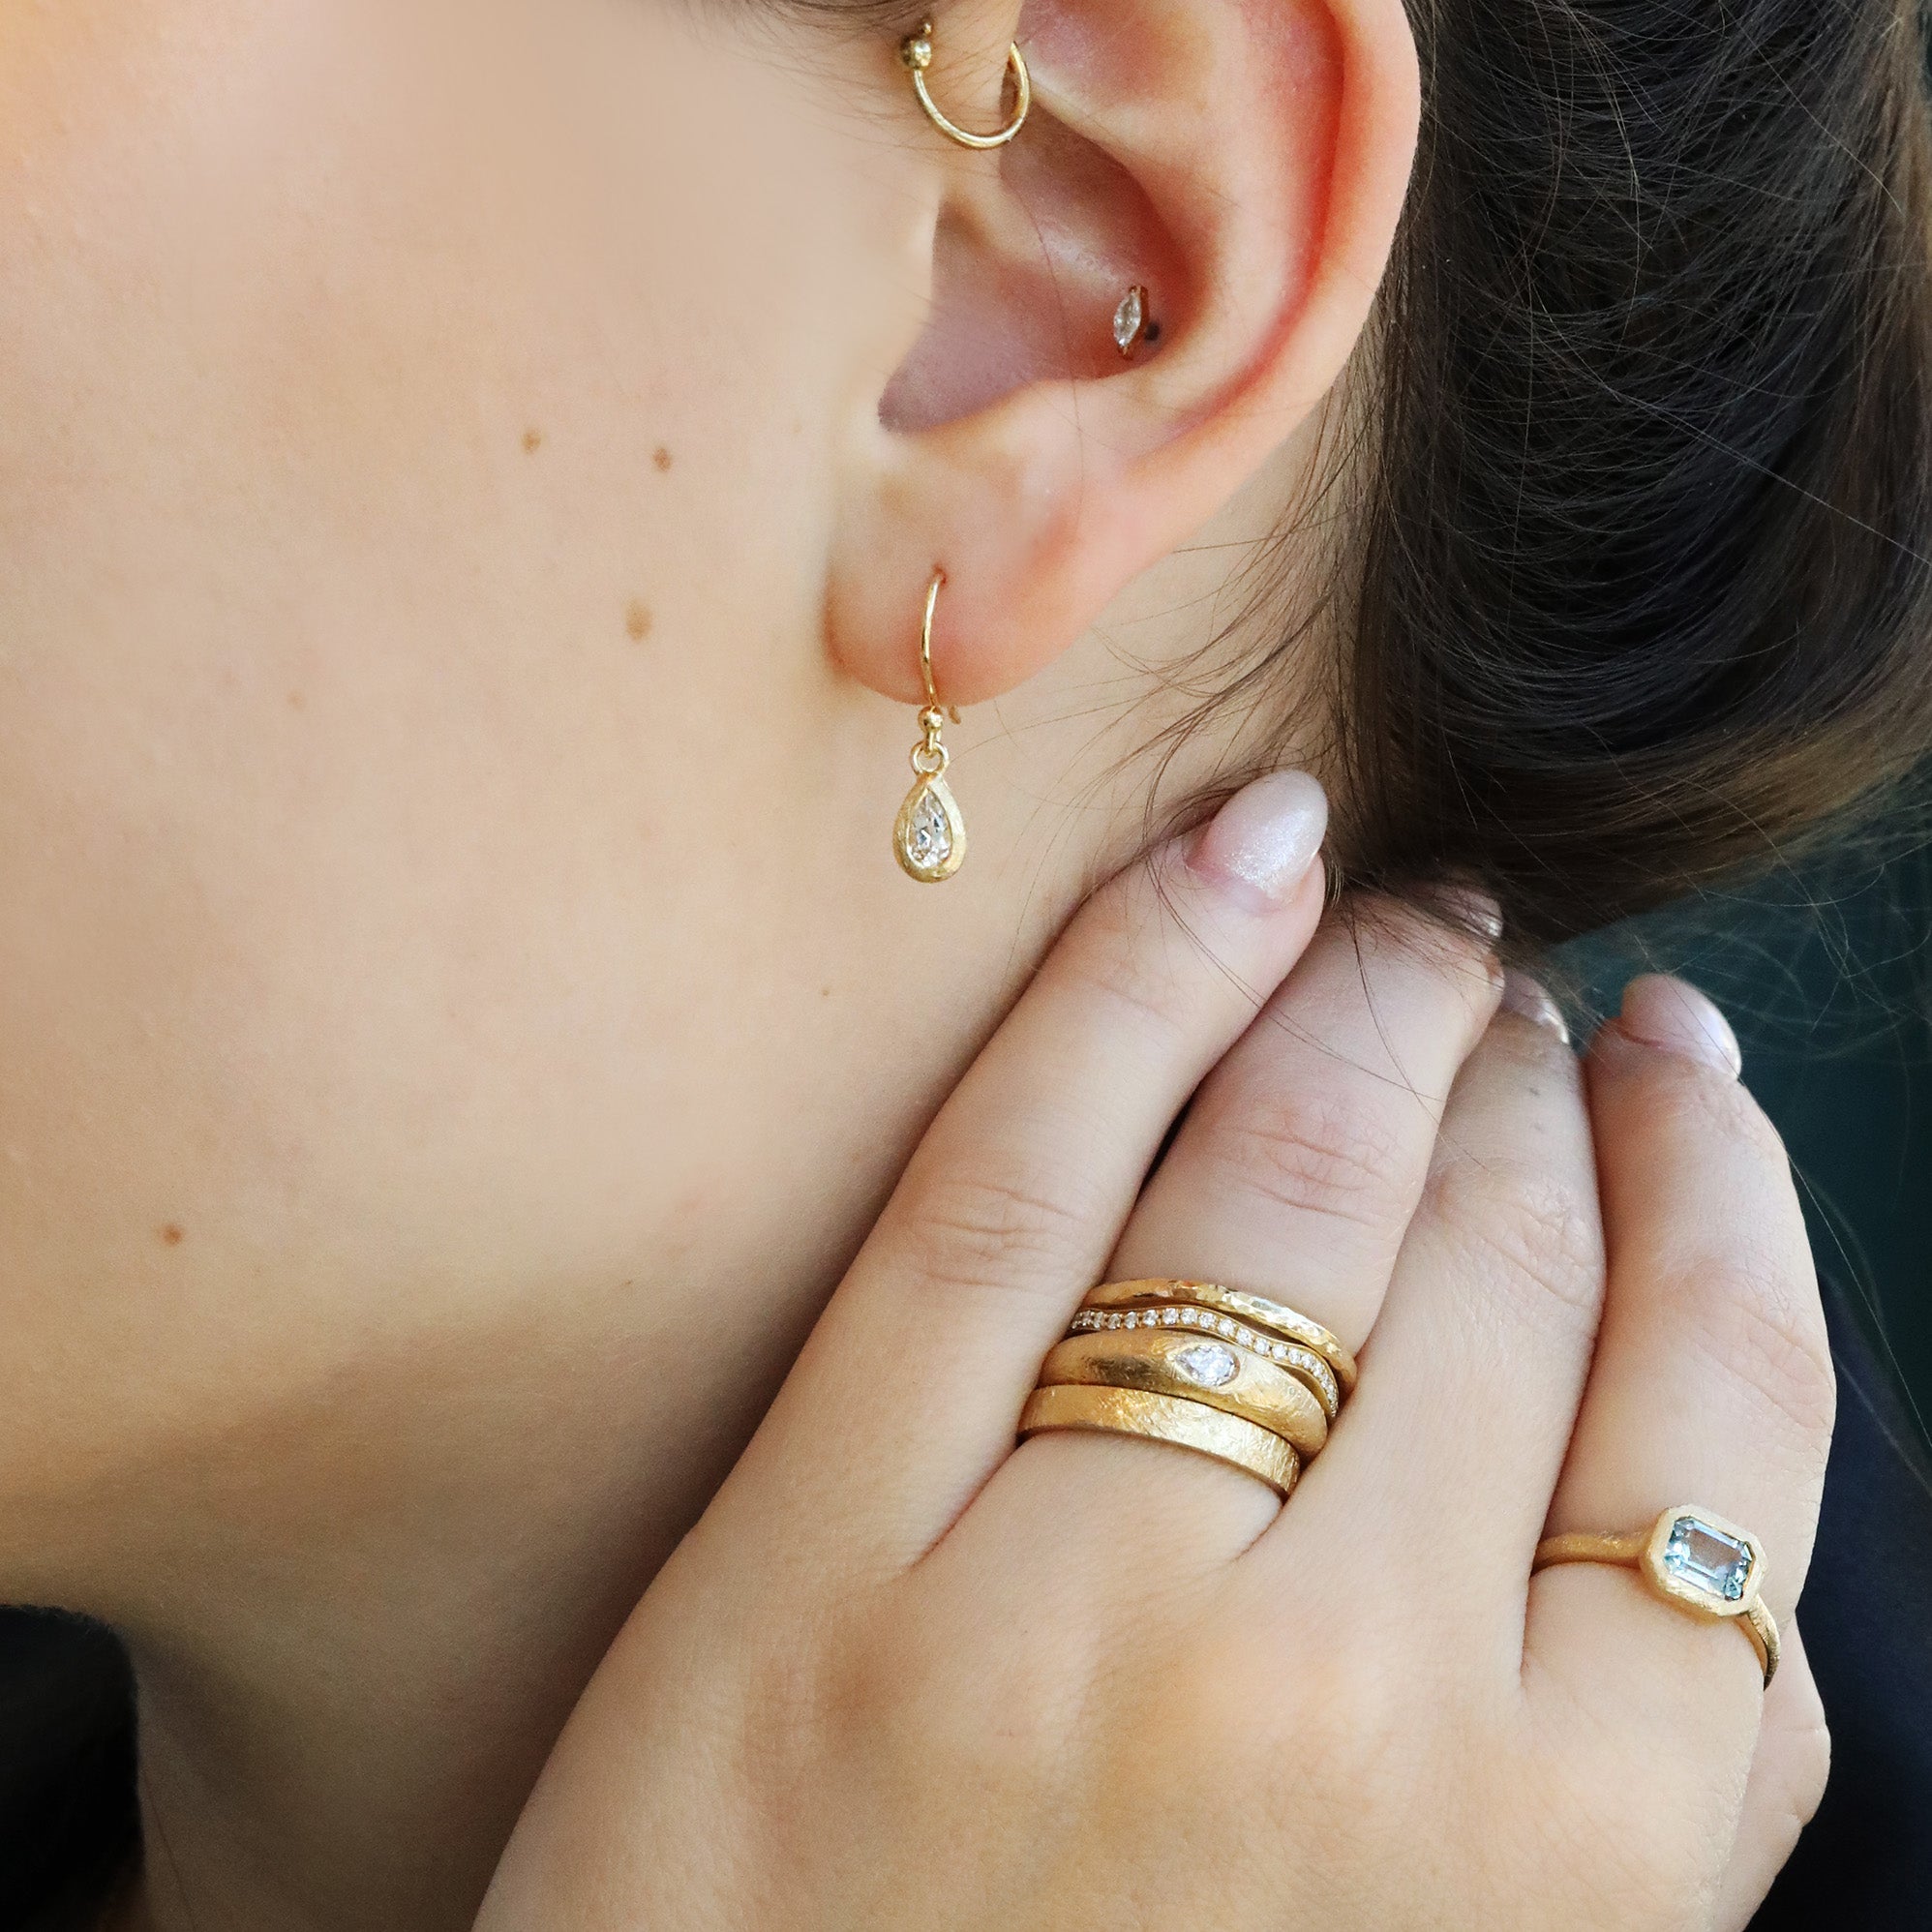 18K Gold Pear-Shaped White Topaz &quot;Boulder&quot; Drop Earring - Peridot Fine Jewelry - Anne Sportun